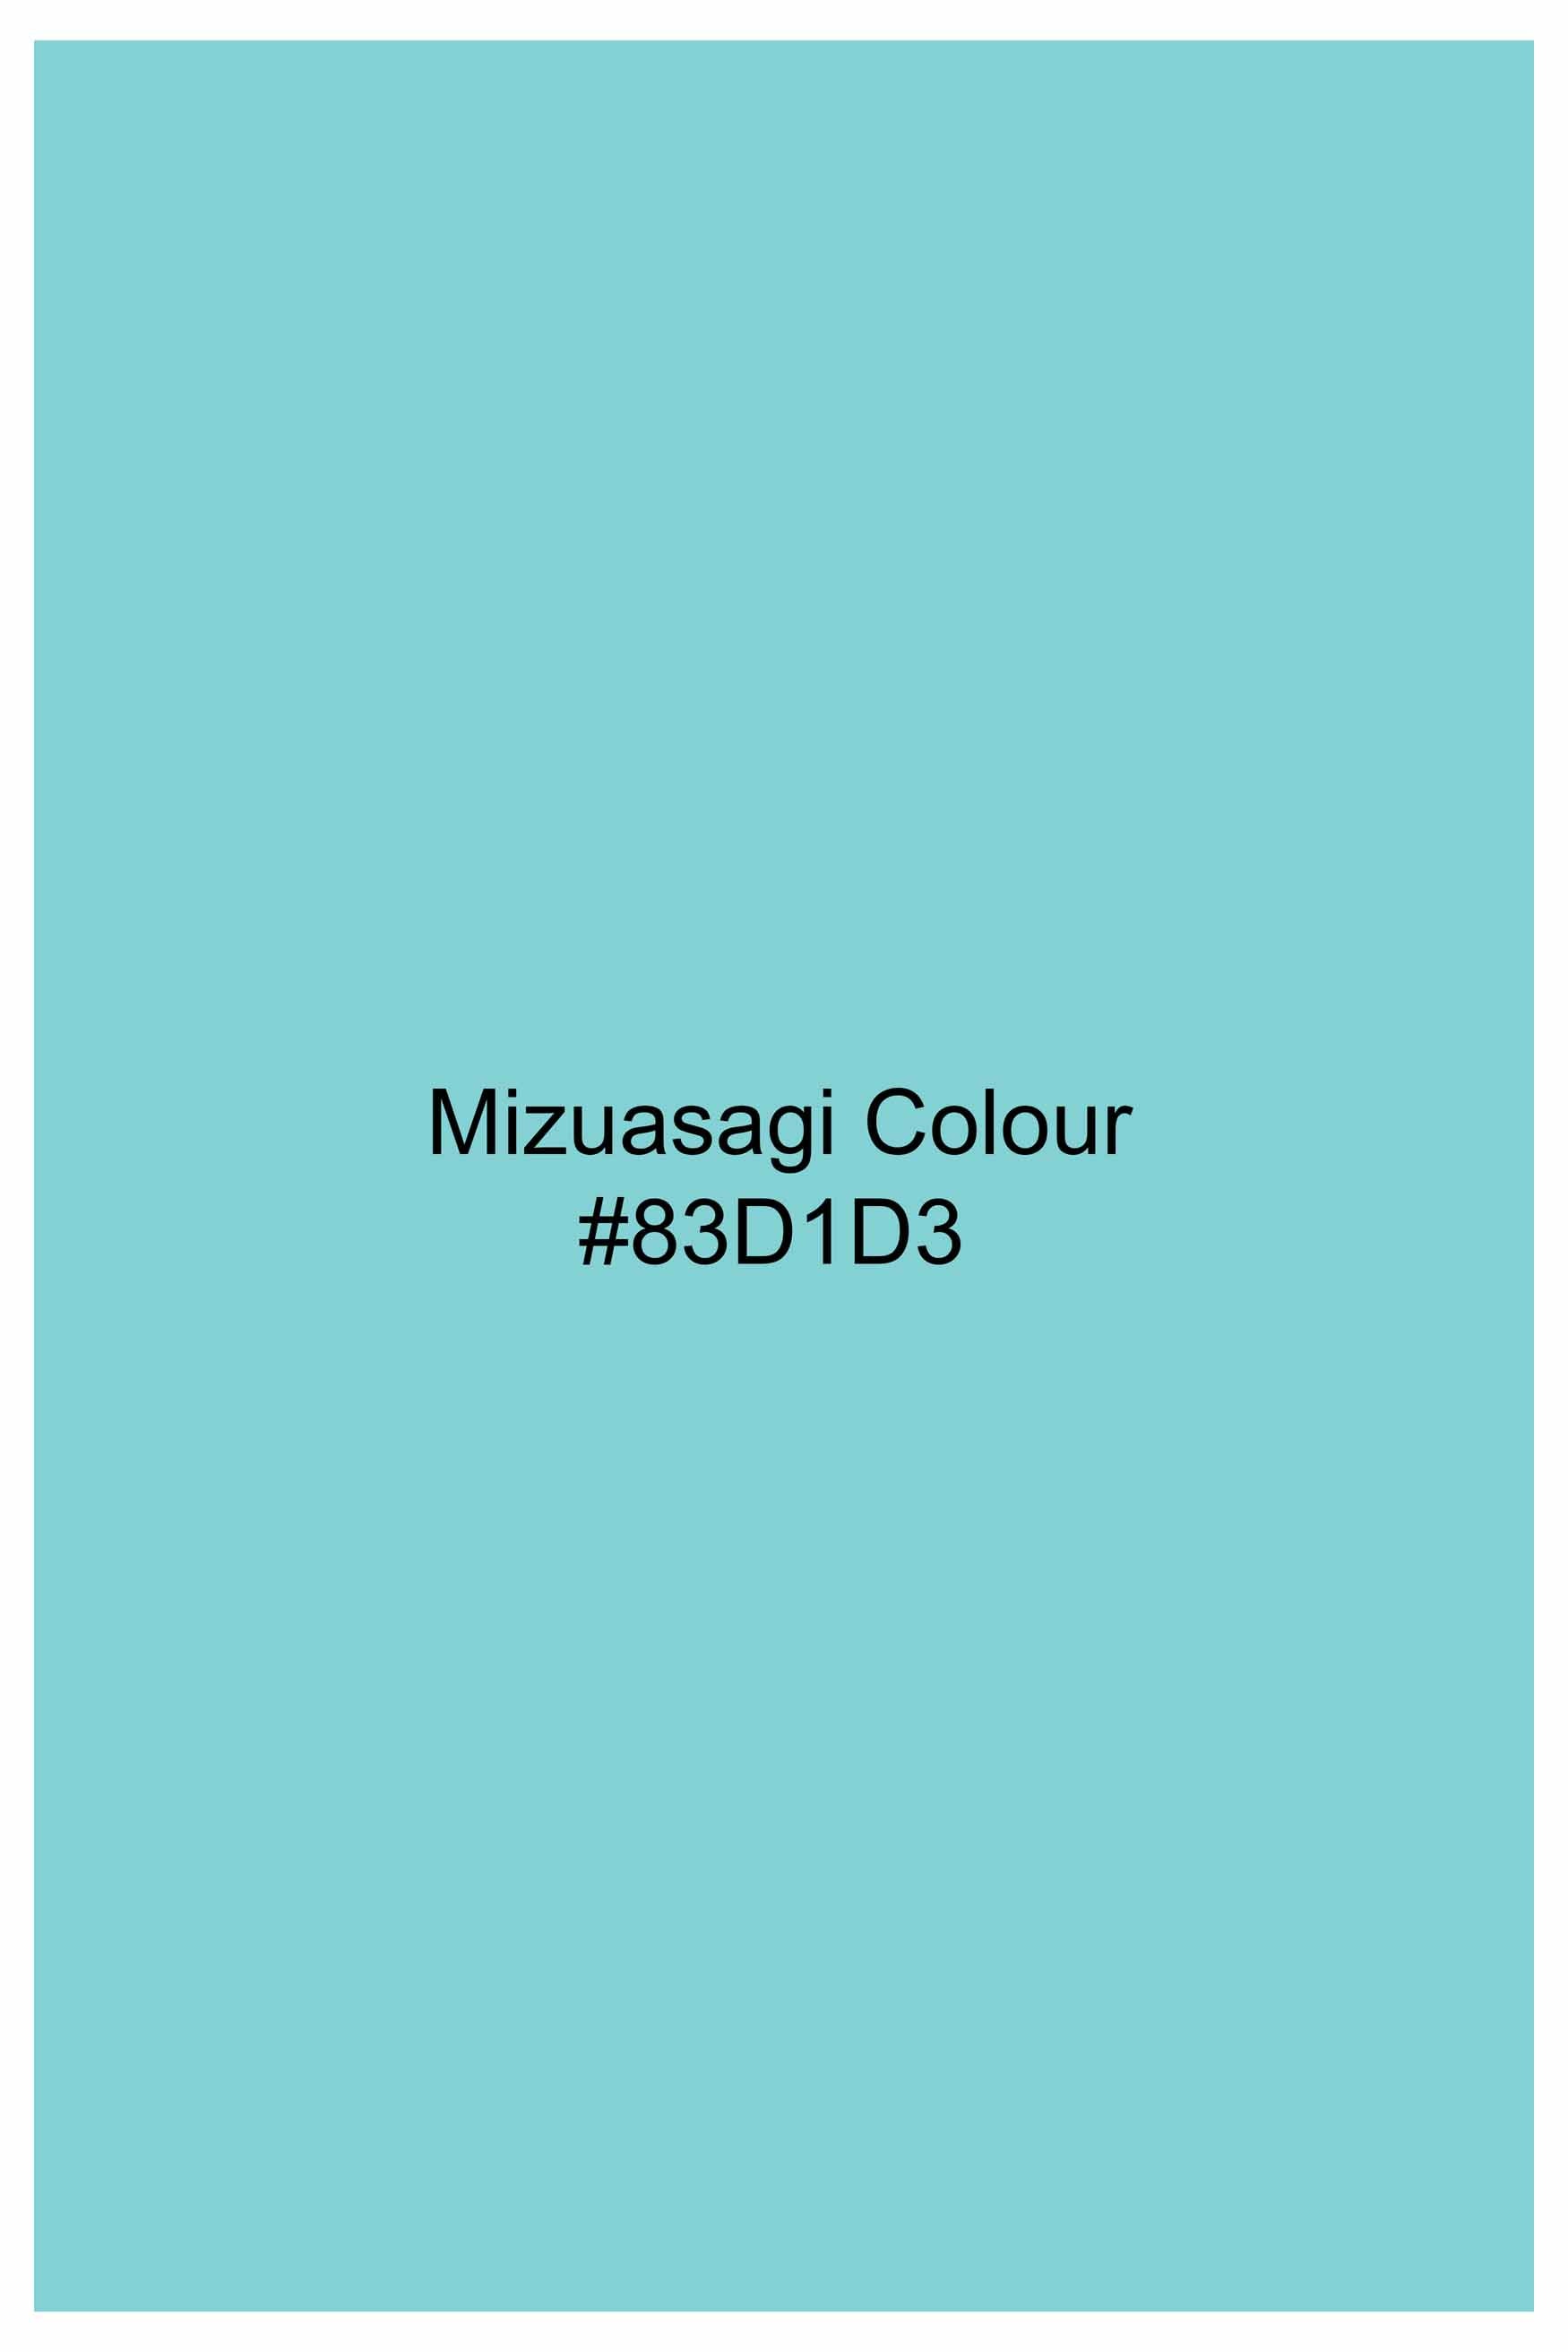 Mizuasagi Blue Subtle Sheen Super Soft Premium Cotton Tuxedo Shirt